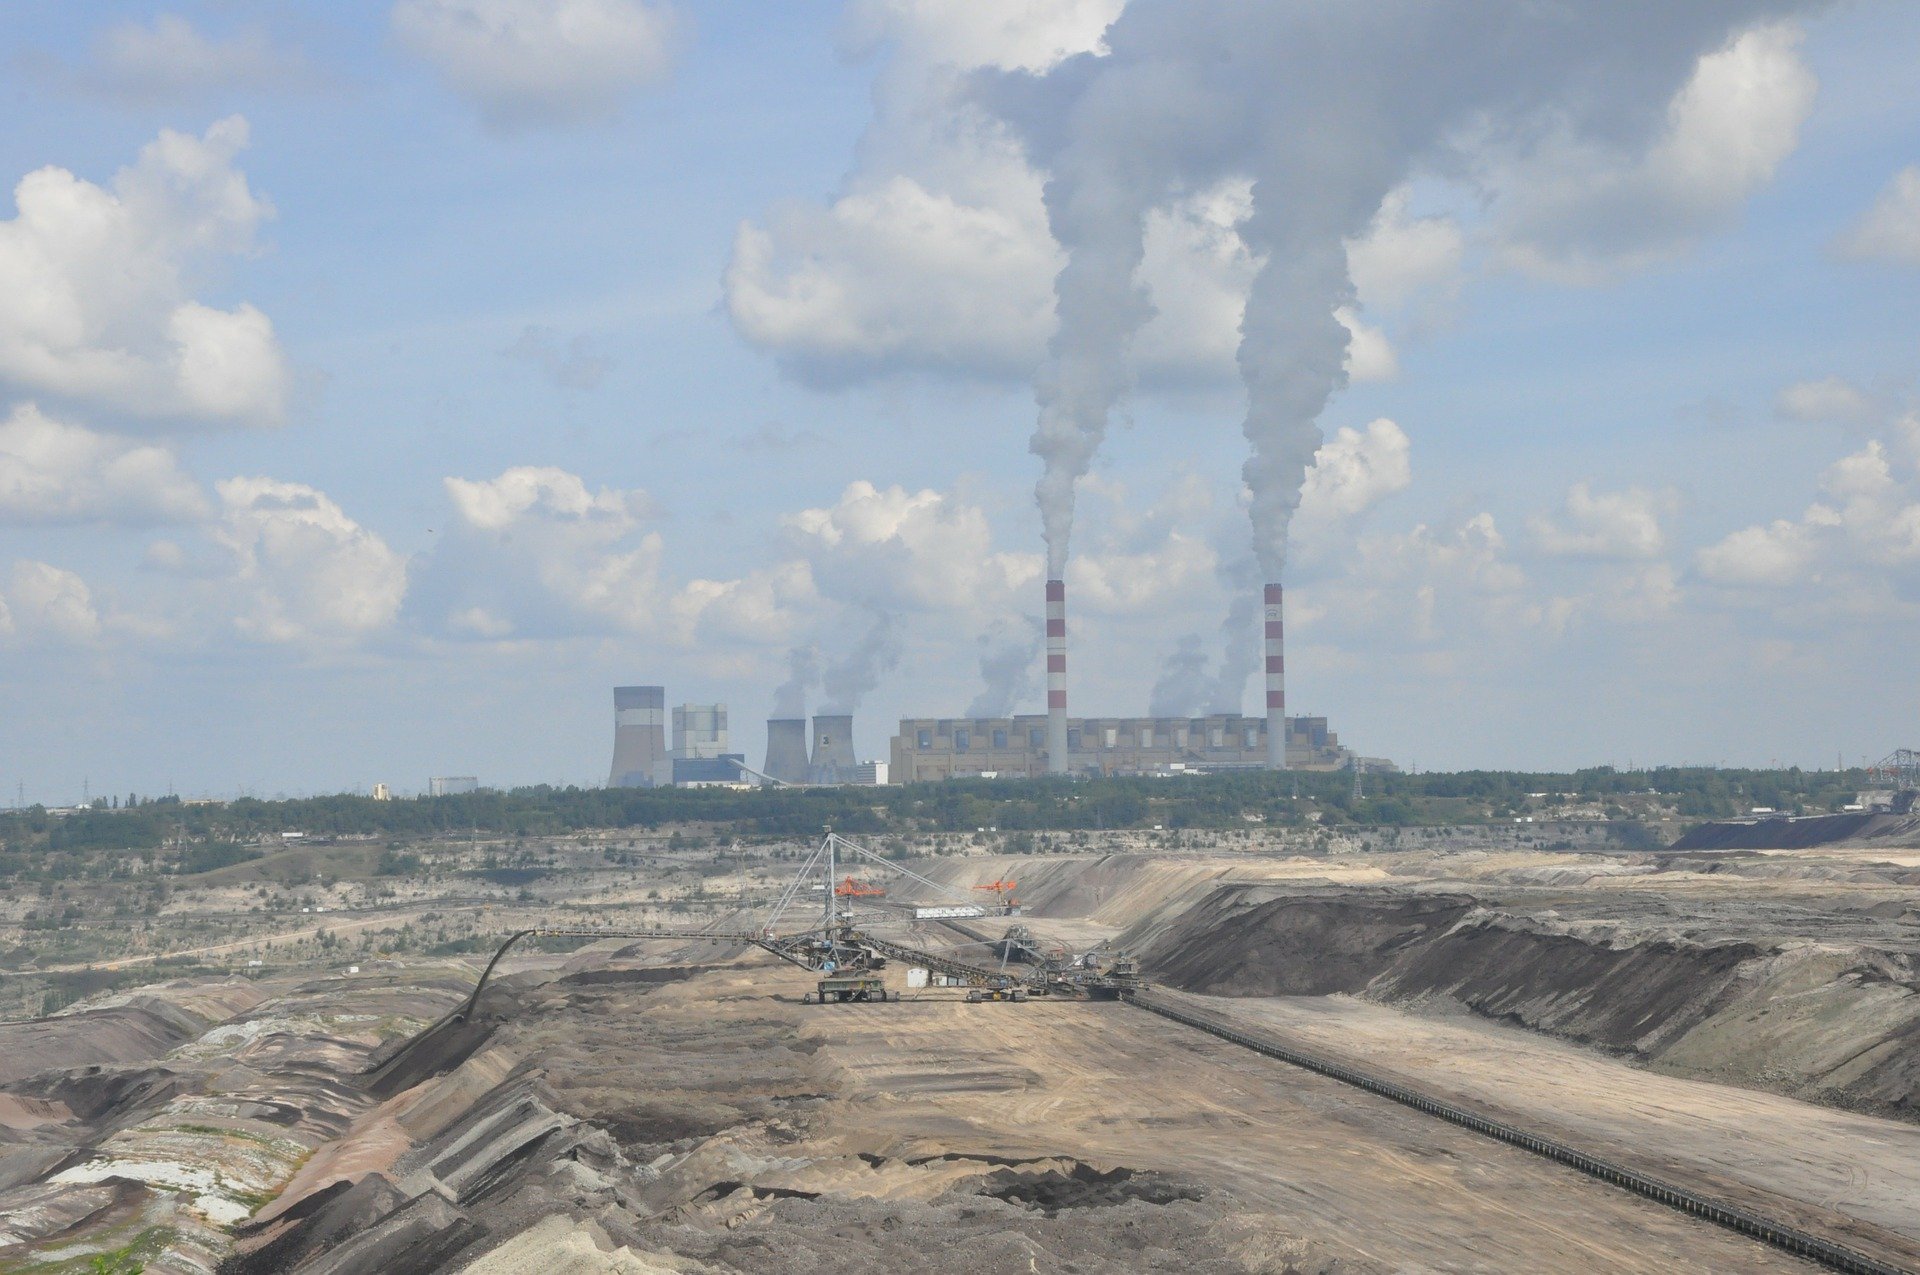 De energiecentrale in Belchatów, Foto Iwona Olczyk/Pixabay